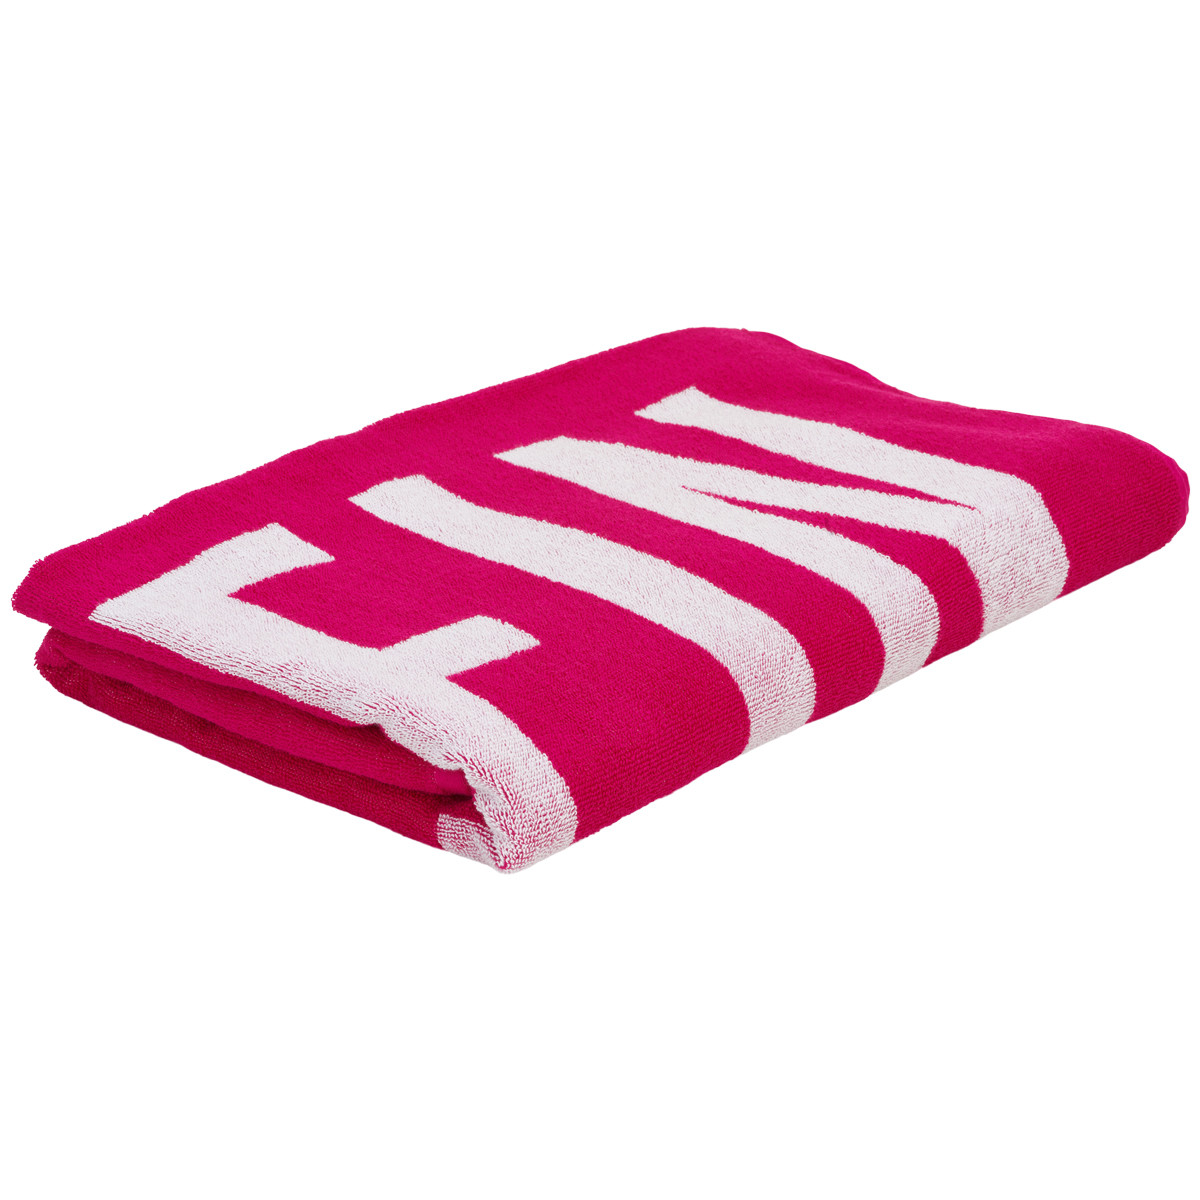 Calvin Klein Lingeri Towel Tilbehør, Farve: Royal Pink, Størrelse: ONESIZE, Dame